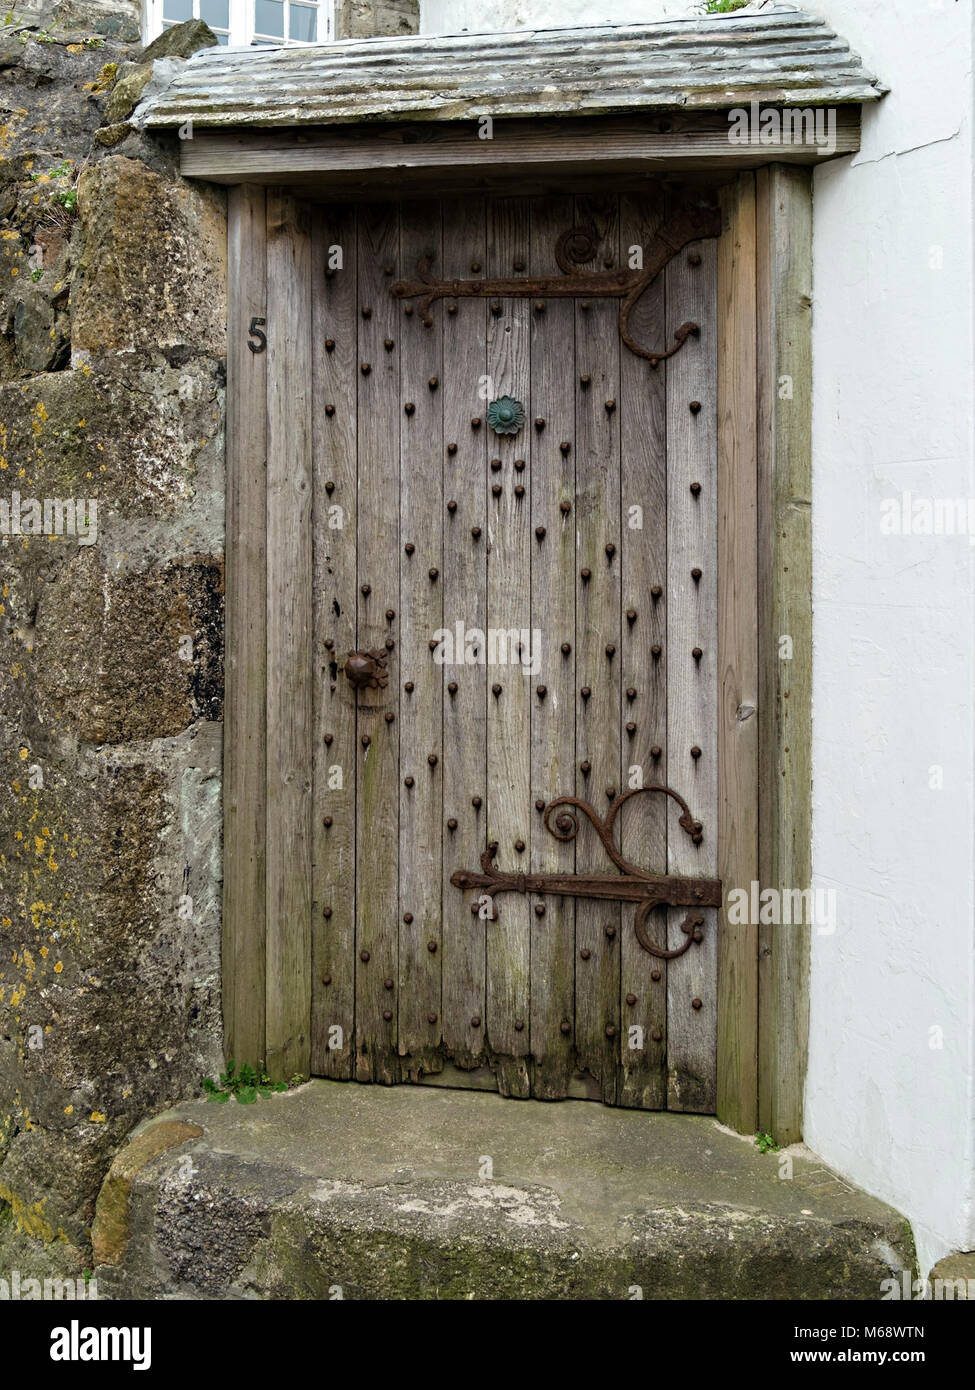 Alte Eiche Haustür mit Beschläge in Granit stein Wand Was ist angeblich das älteste Haus in St. Ives, Cornwall, England, Großbritannien Stockfoto